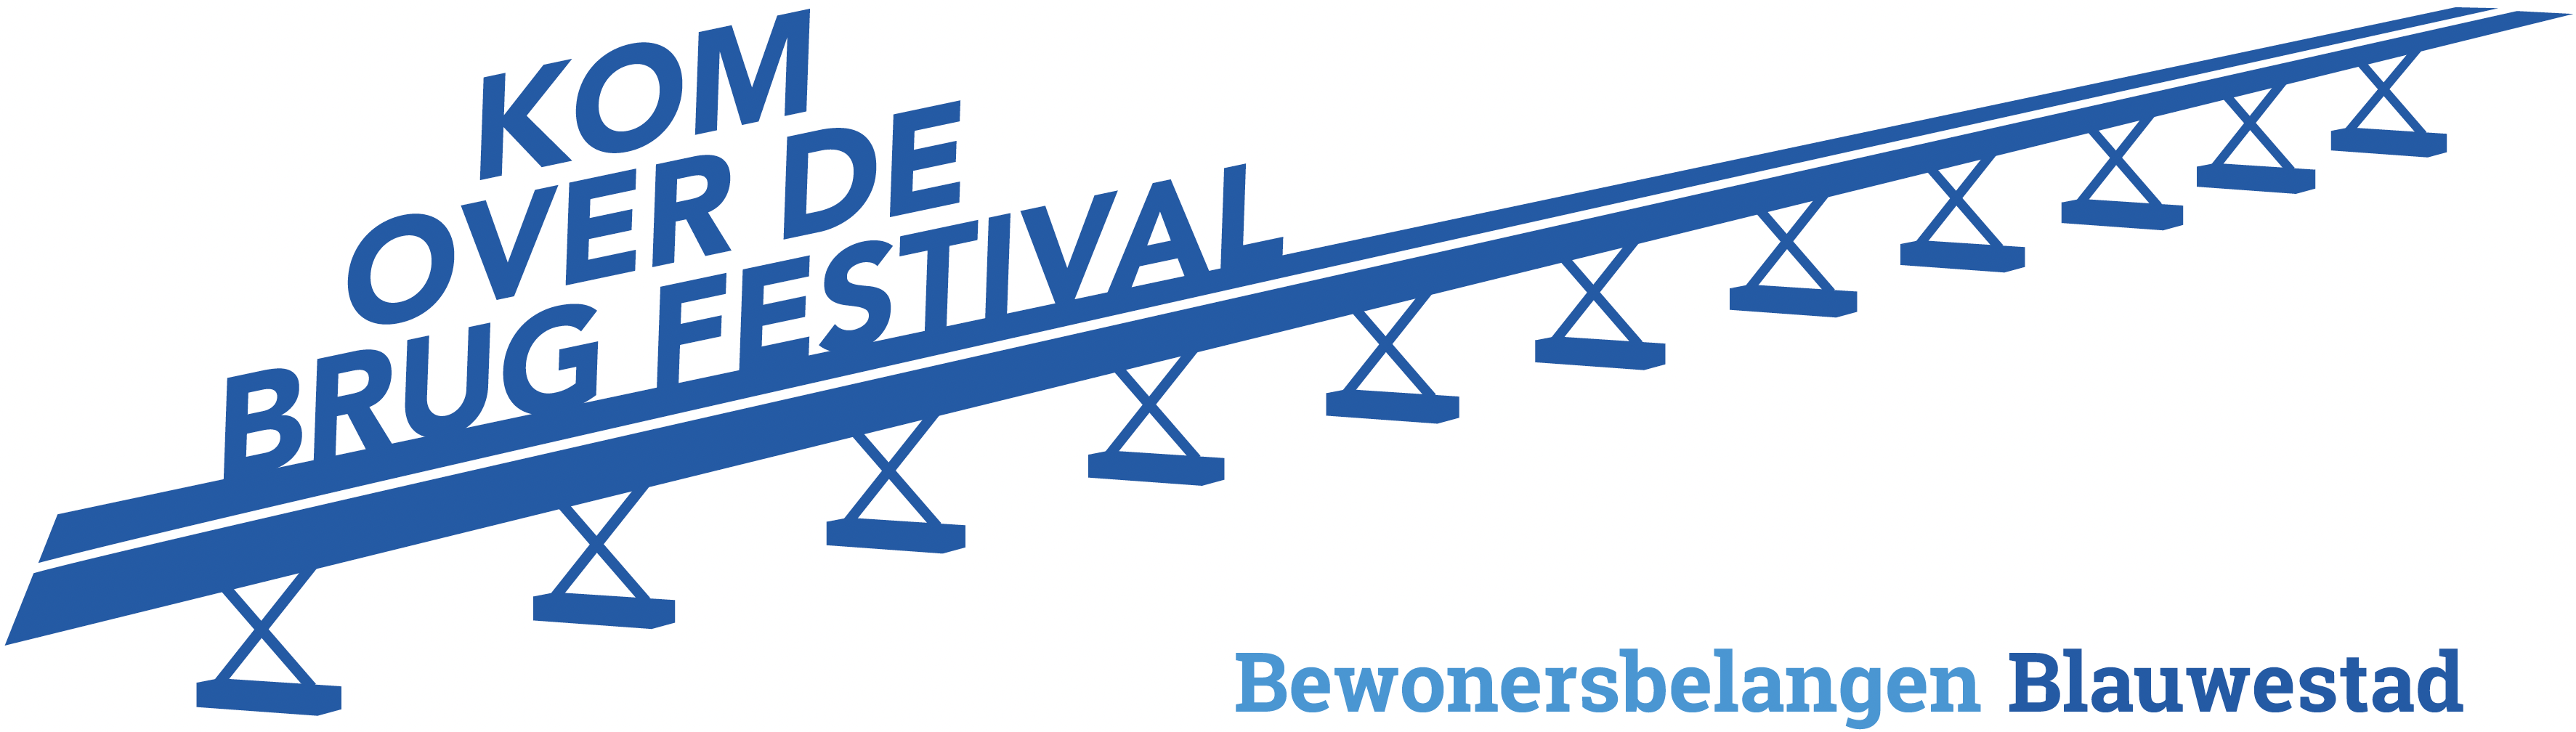 logo Kom over de brug festival